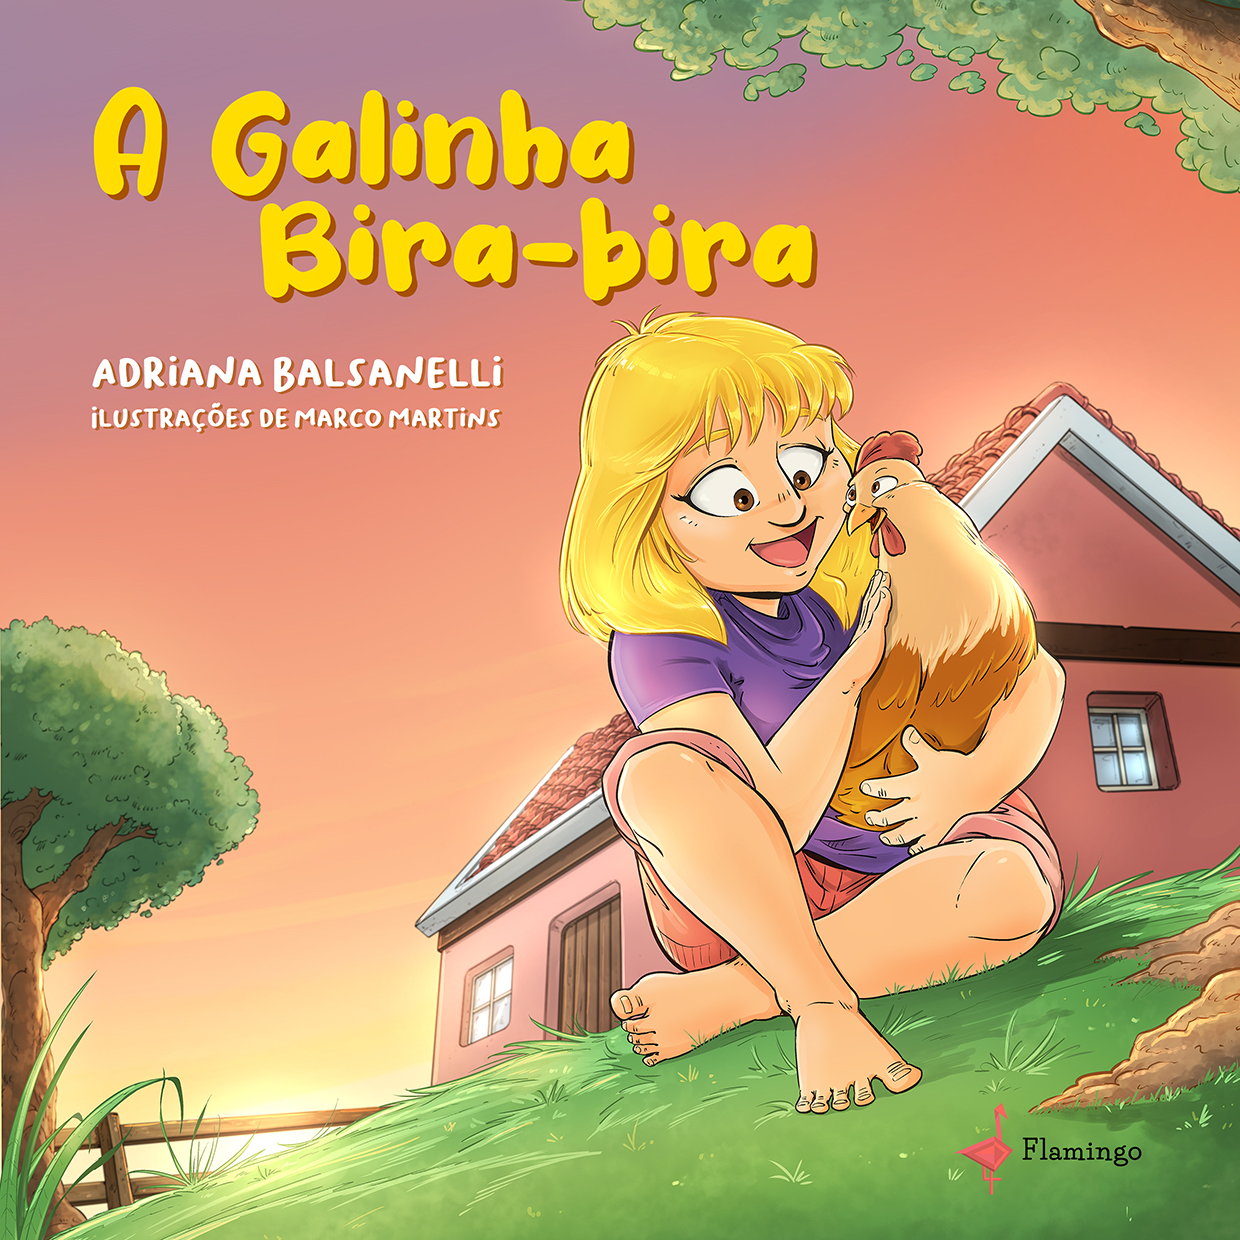 Adriana Balsanelli lança seu primeiro livro infantil, “A Galinha Bira-bira”, que ensina aos pequenos a importância de se conviver com a diferença